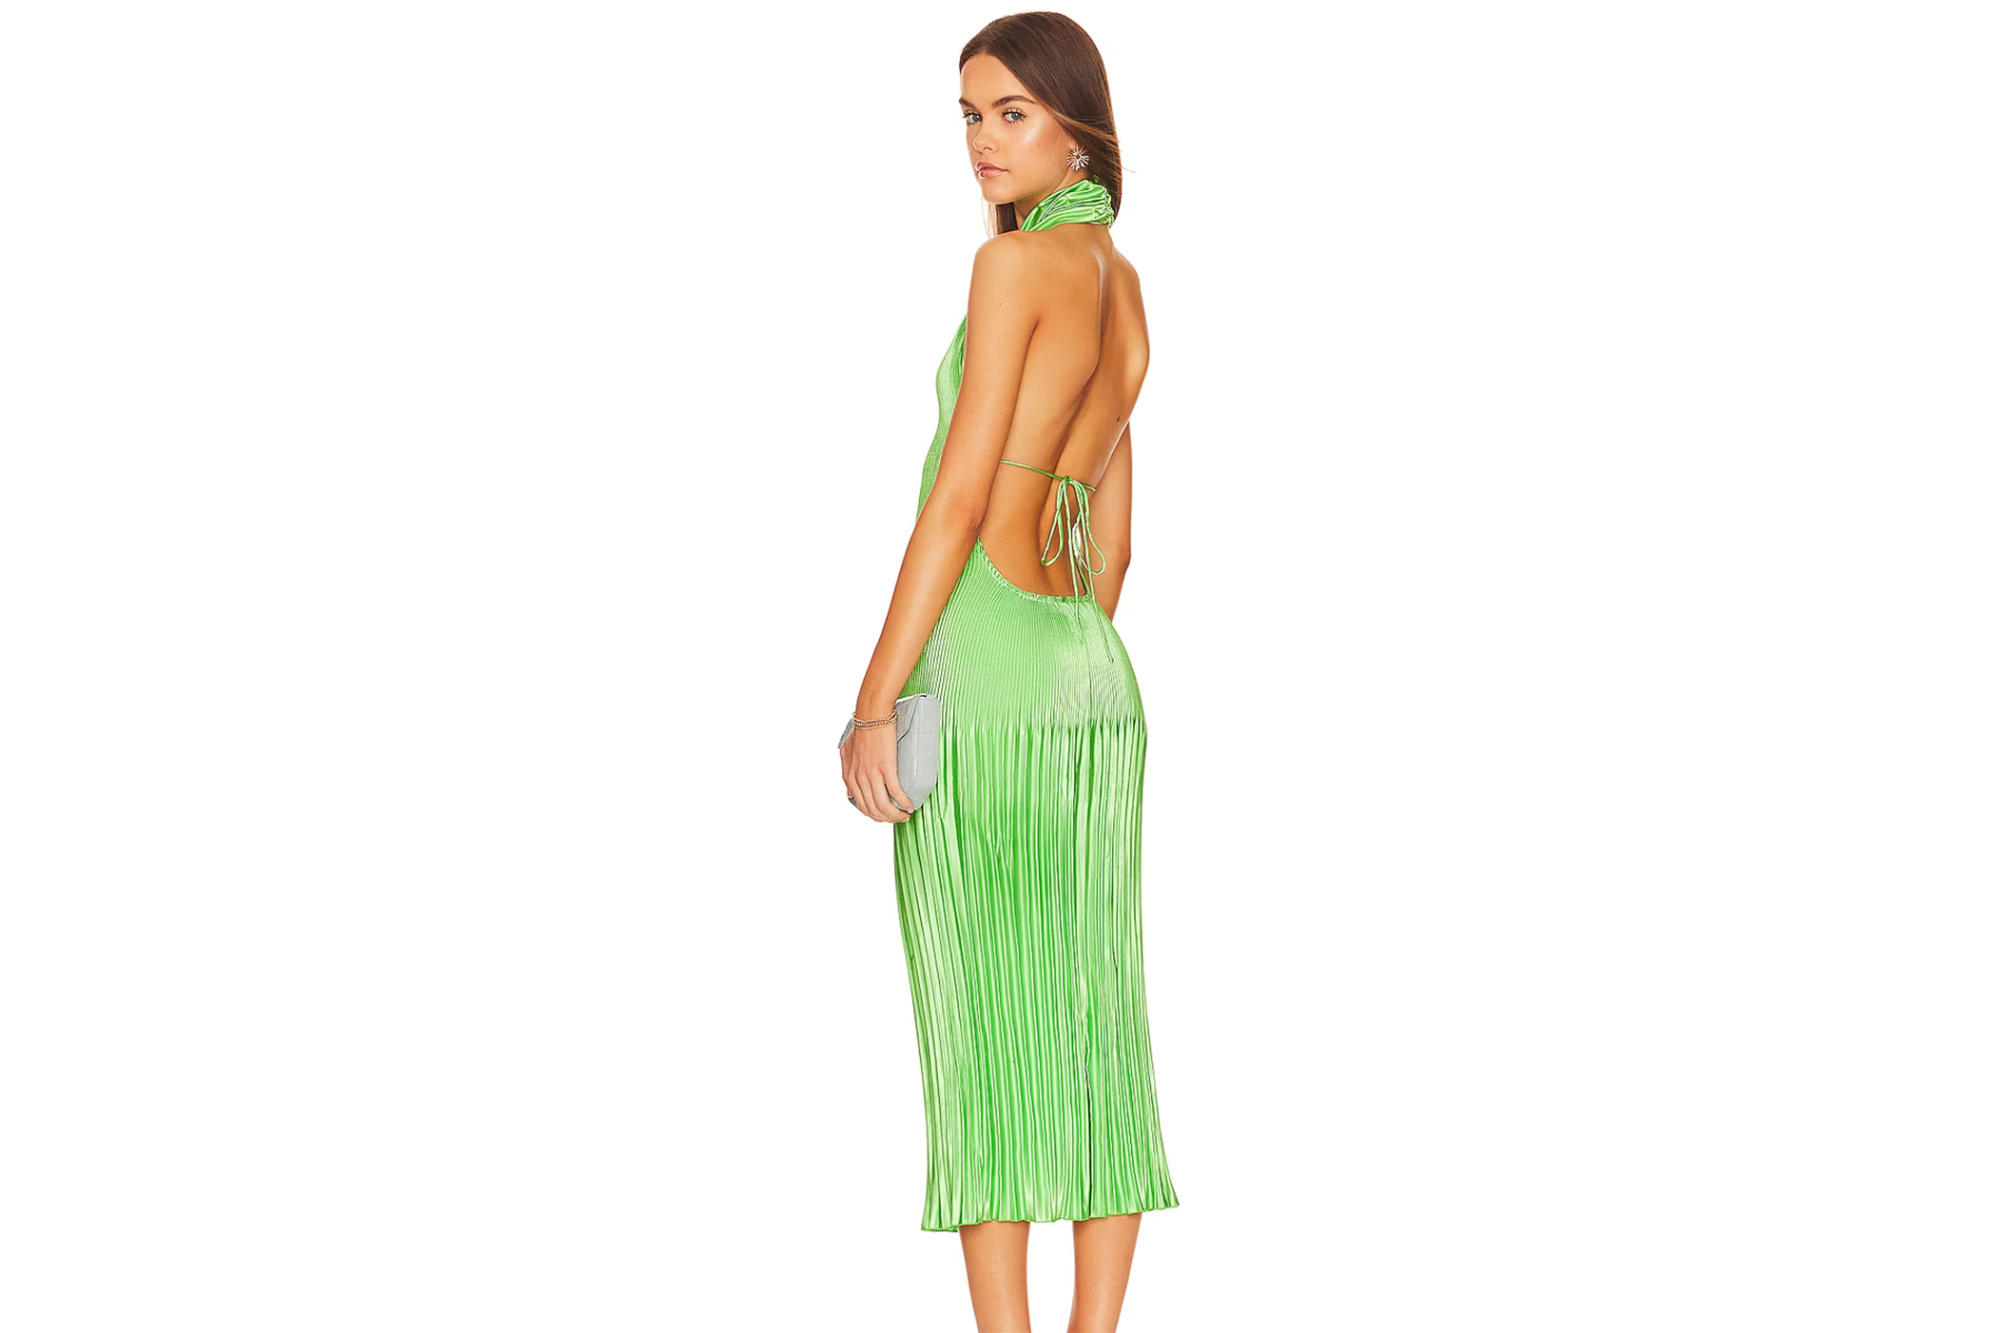 Ein Model in einem grünen rückenfreien Kleid